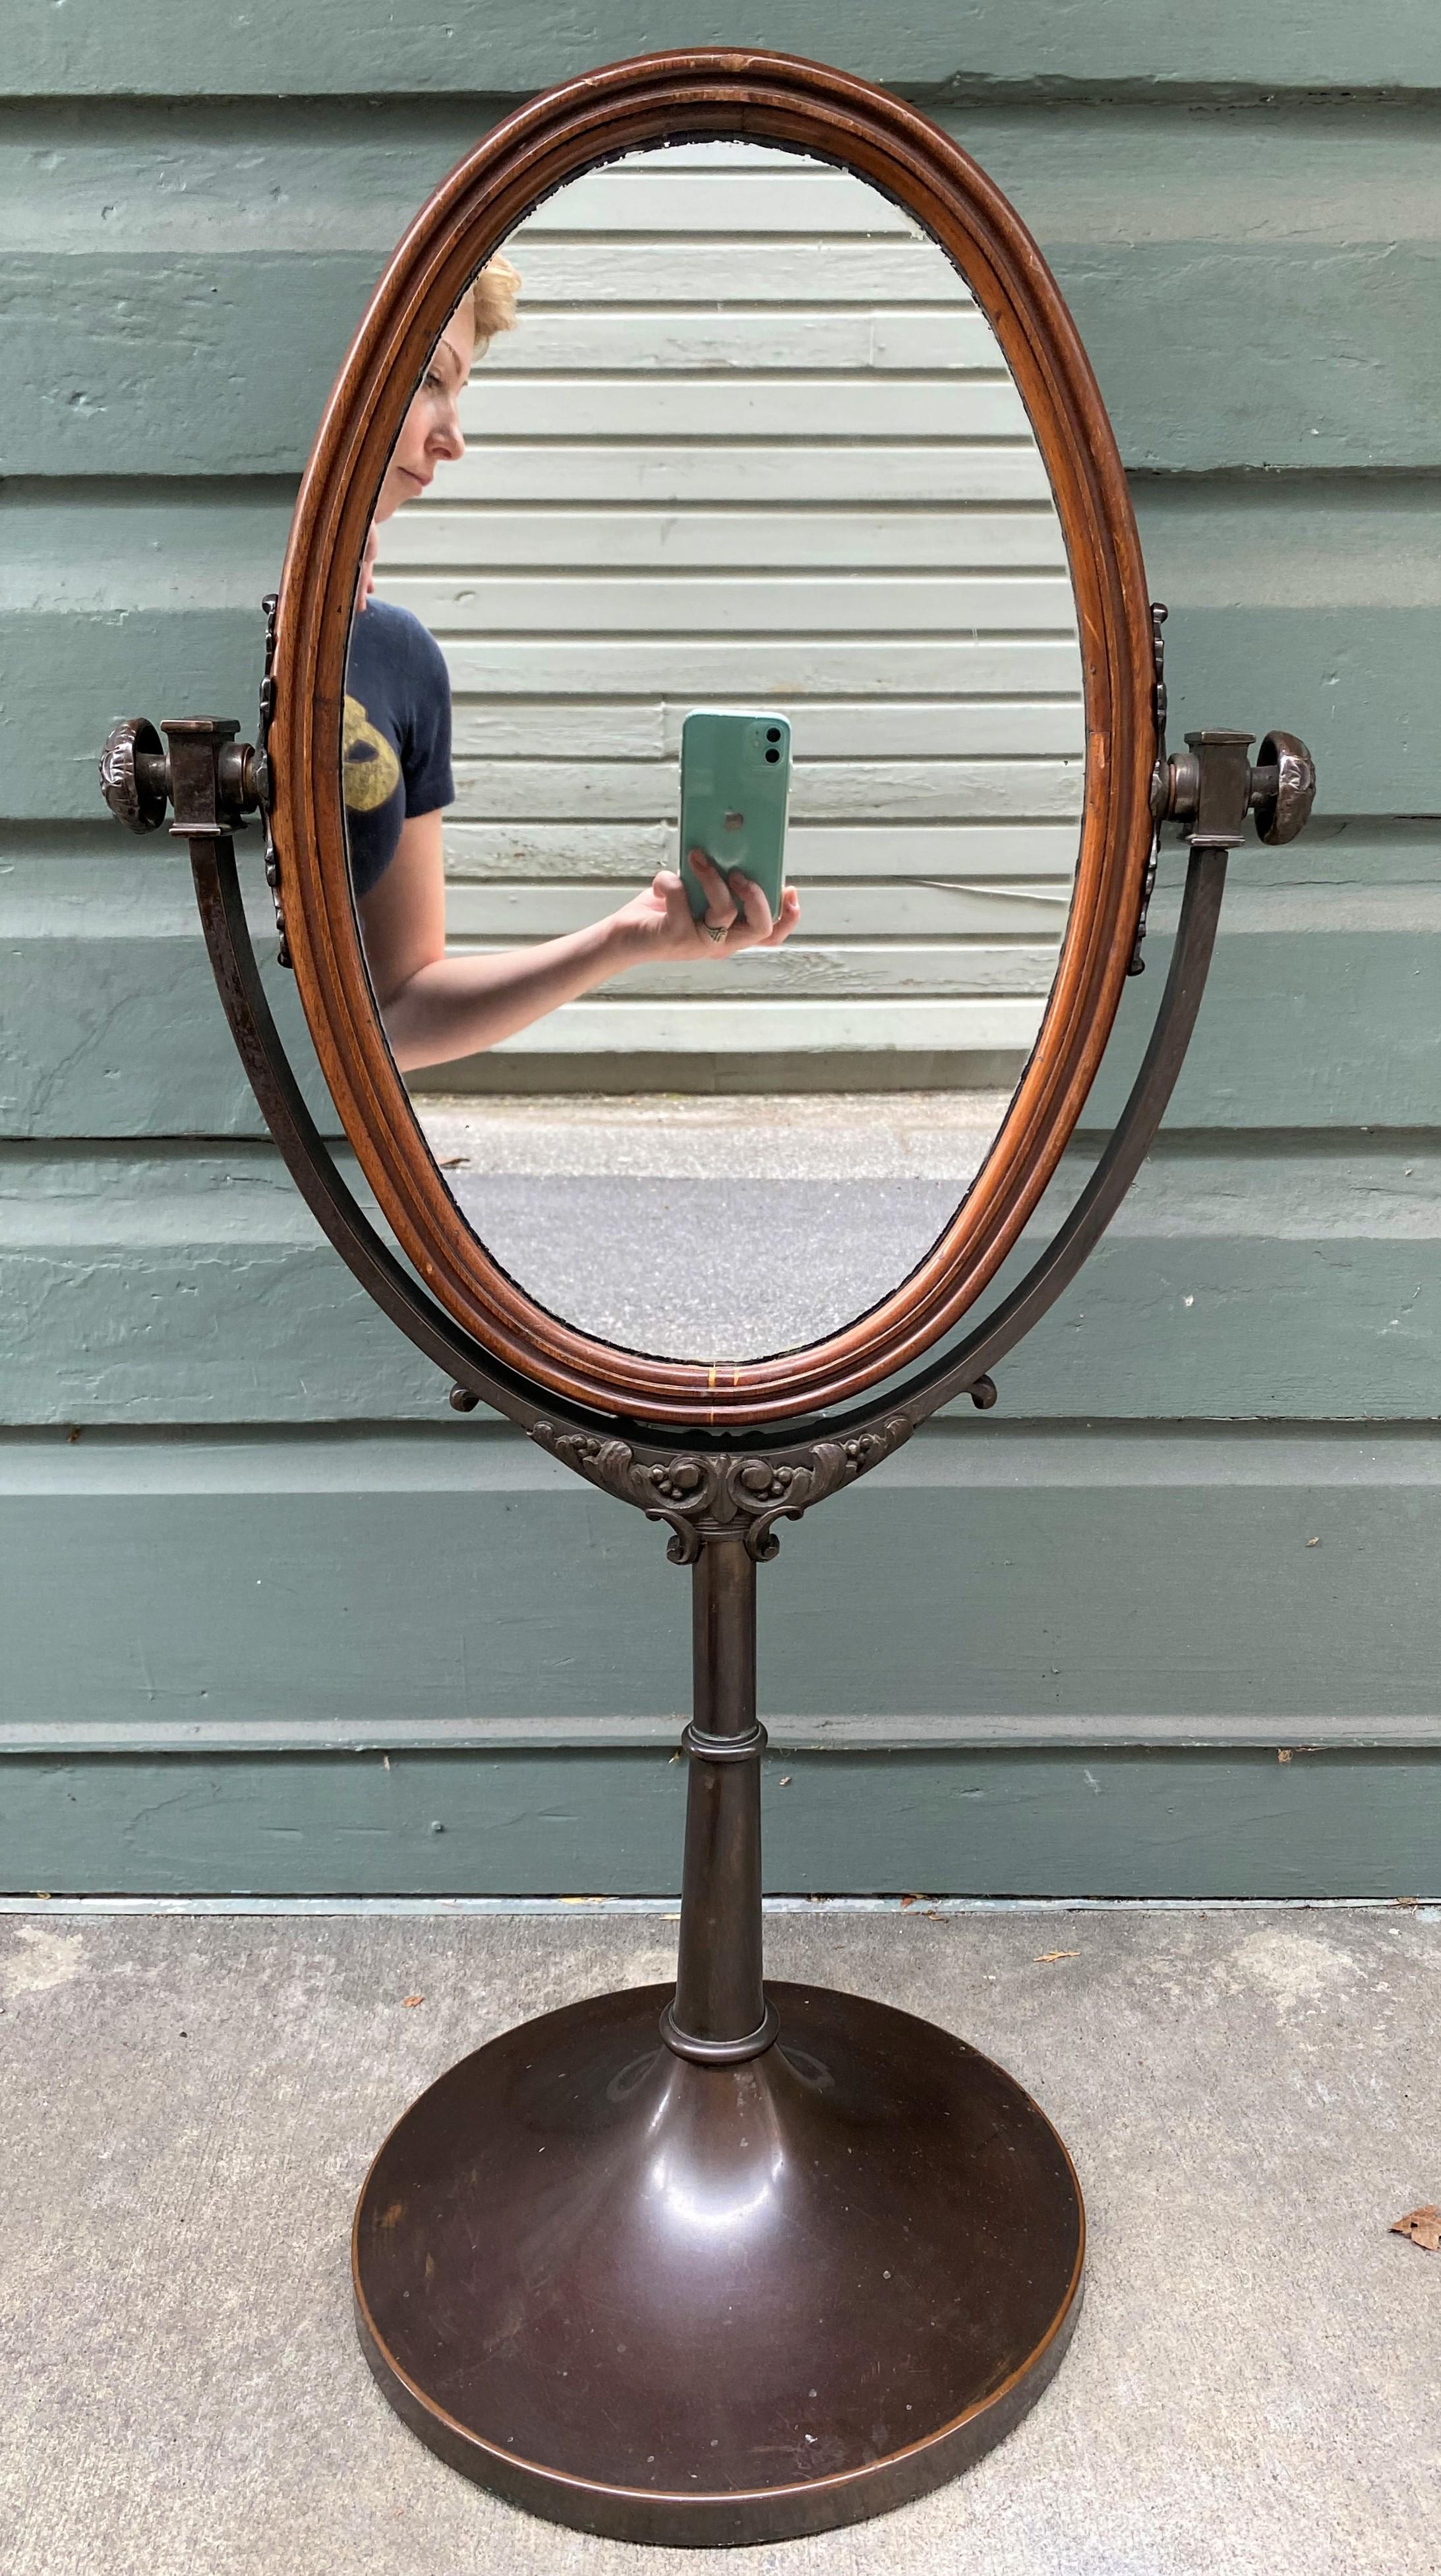 Merveilleuse paire de miroirs de coiffure Regency anglais du milieu du 19e siècle. Les miroirs sont encadrés en acajou et les deux côtés sont miroités. Les supports sont en bronze. Les miroirs mesurent 12,25